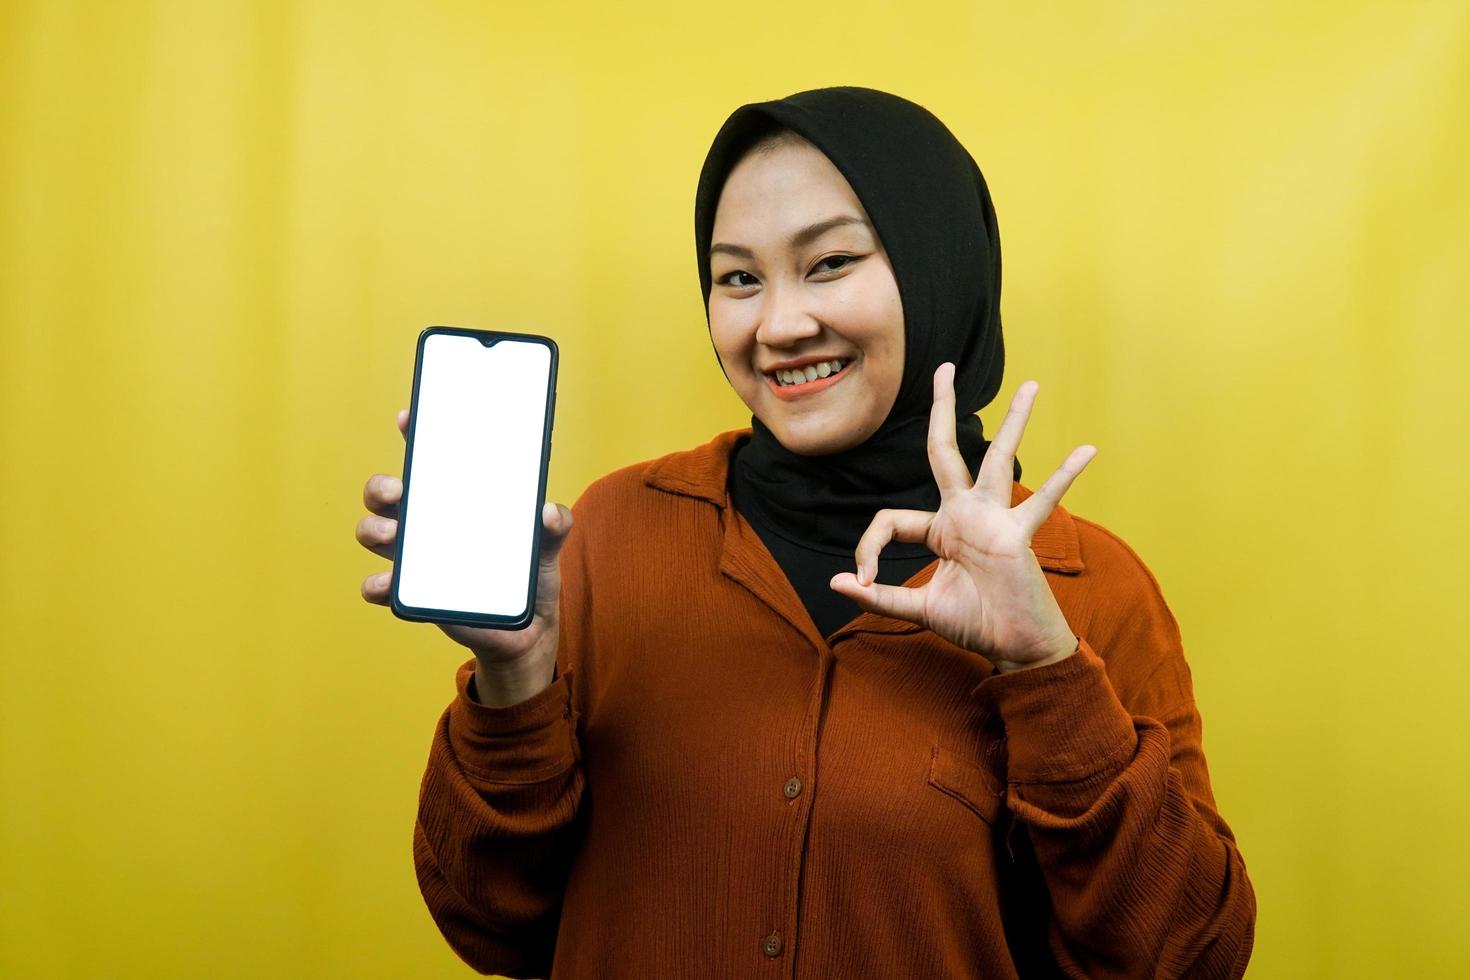 belle jeune femme musulmane asiatique tenant un smartphone avec écran blanc ou vierge, faisant la promotion de l'application, faisant la promotion de quelque chose, isolé, concept publicitaire photo